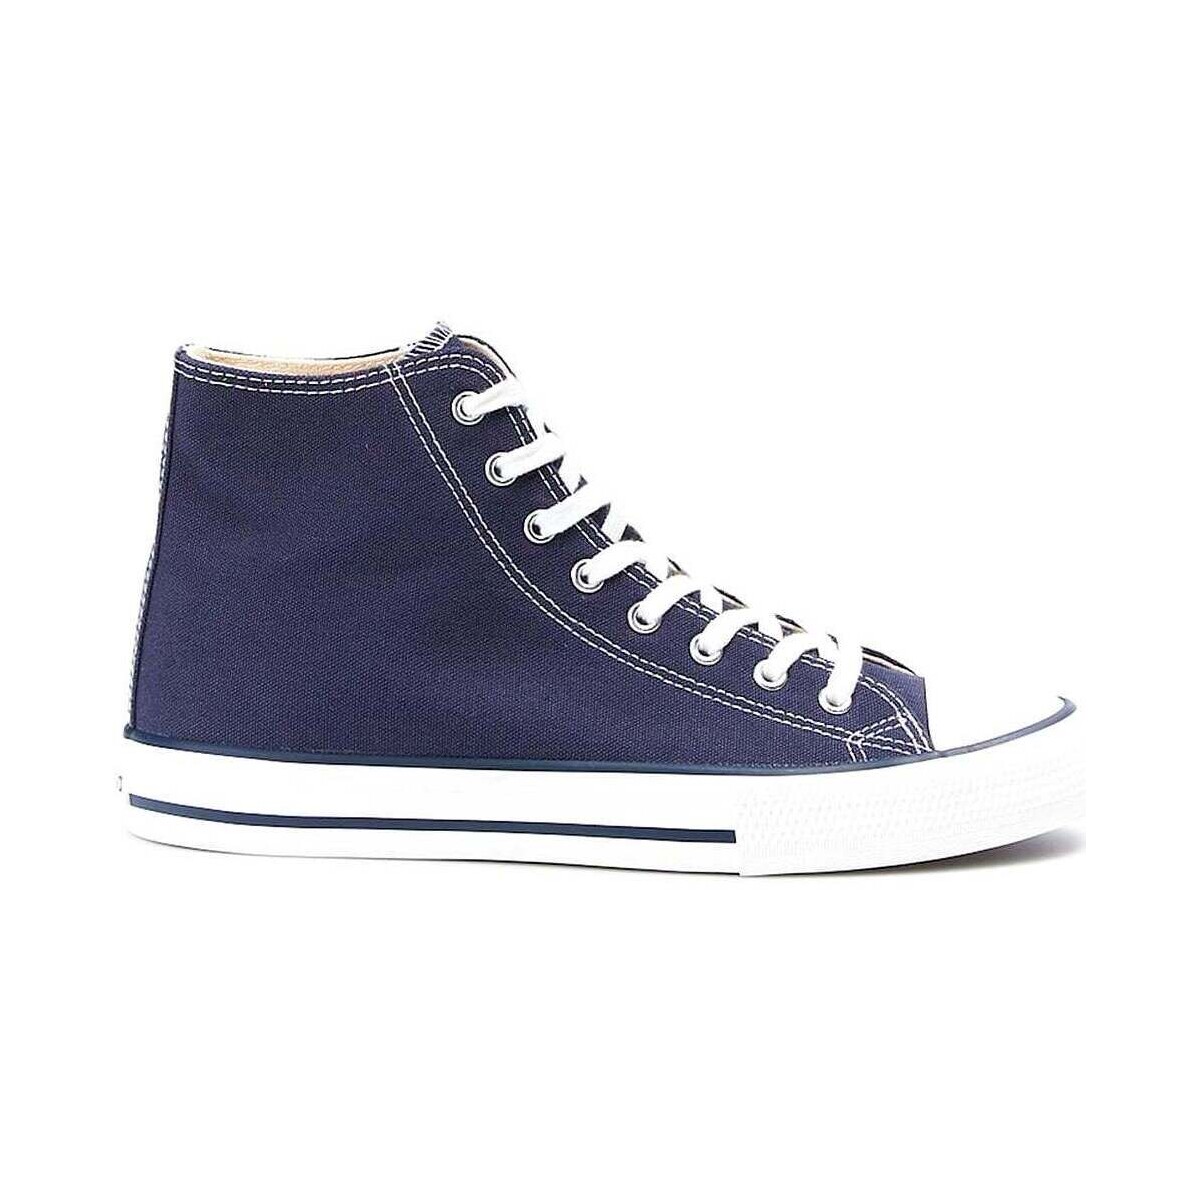 Zapatos Mujer Zapatillas bajas Victoria DEPORTIVA  106500 Azul